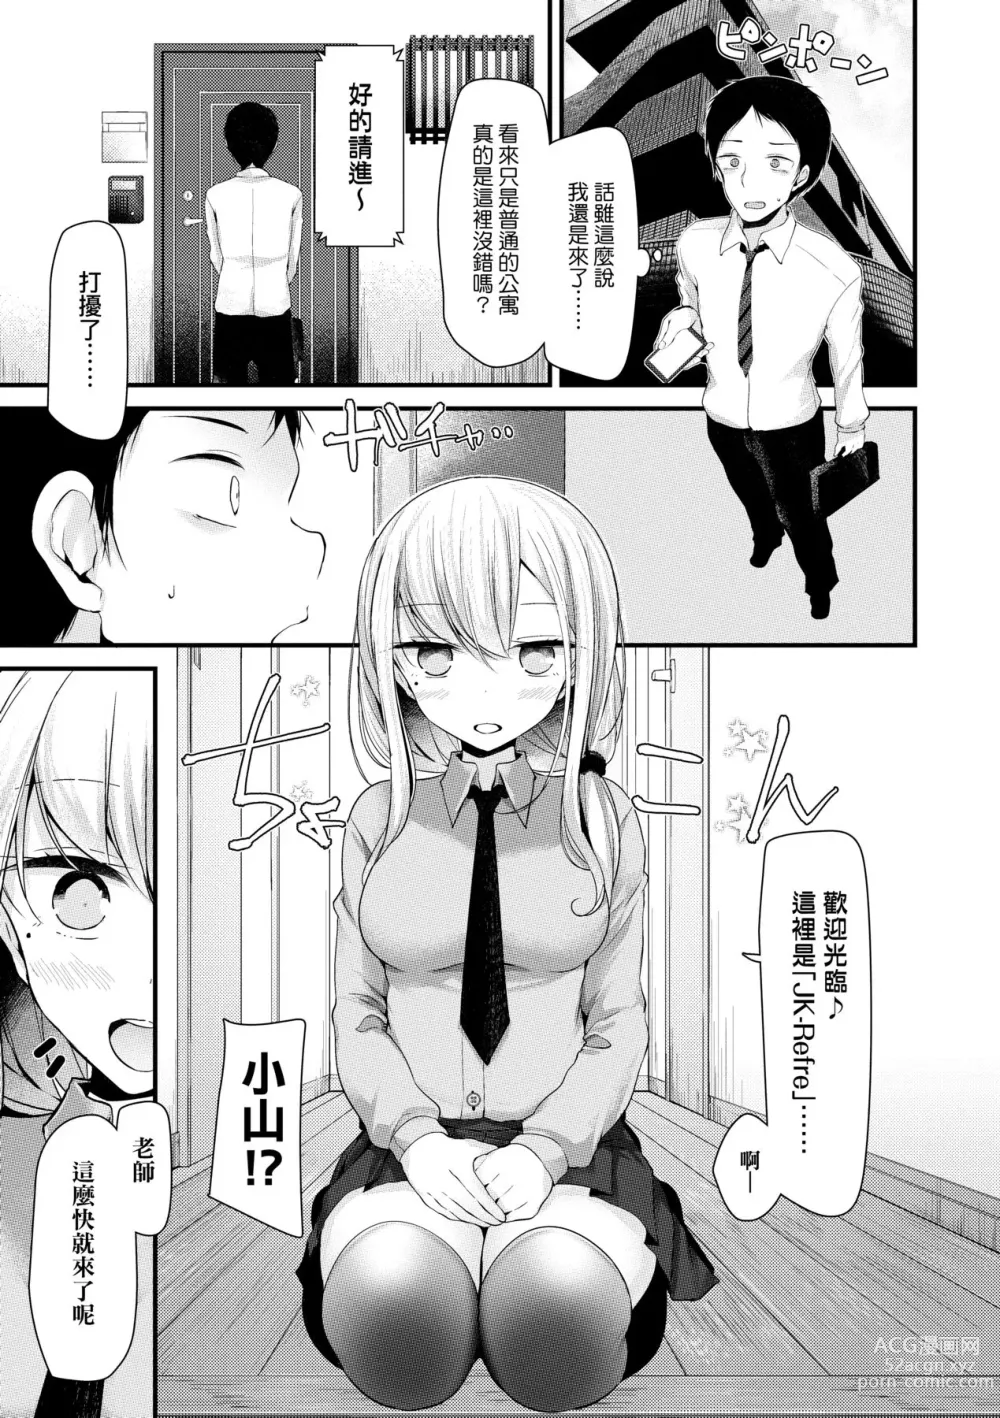 Page 10 of manga JK.REFLE (decensored)